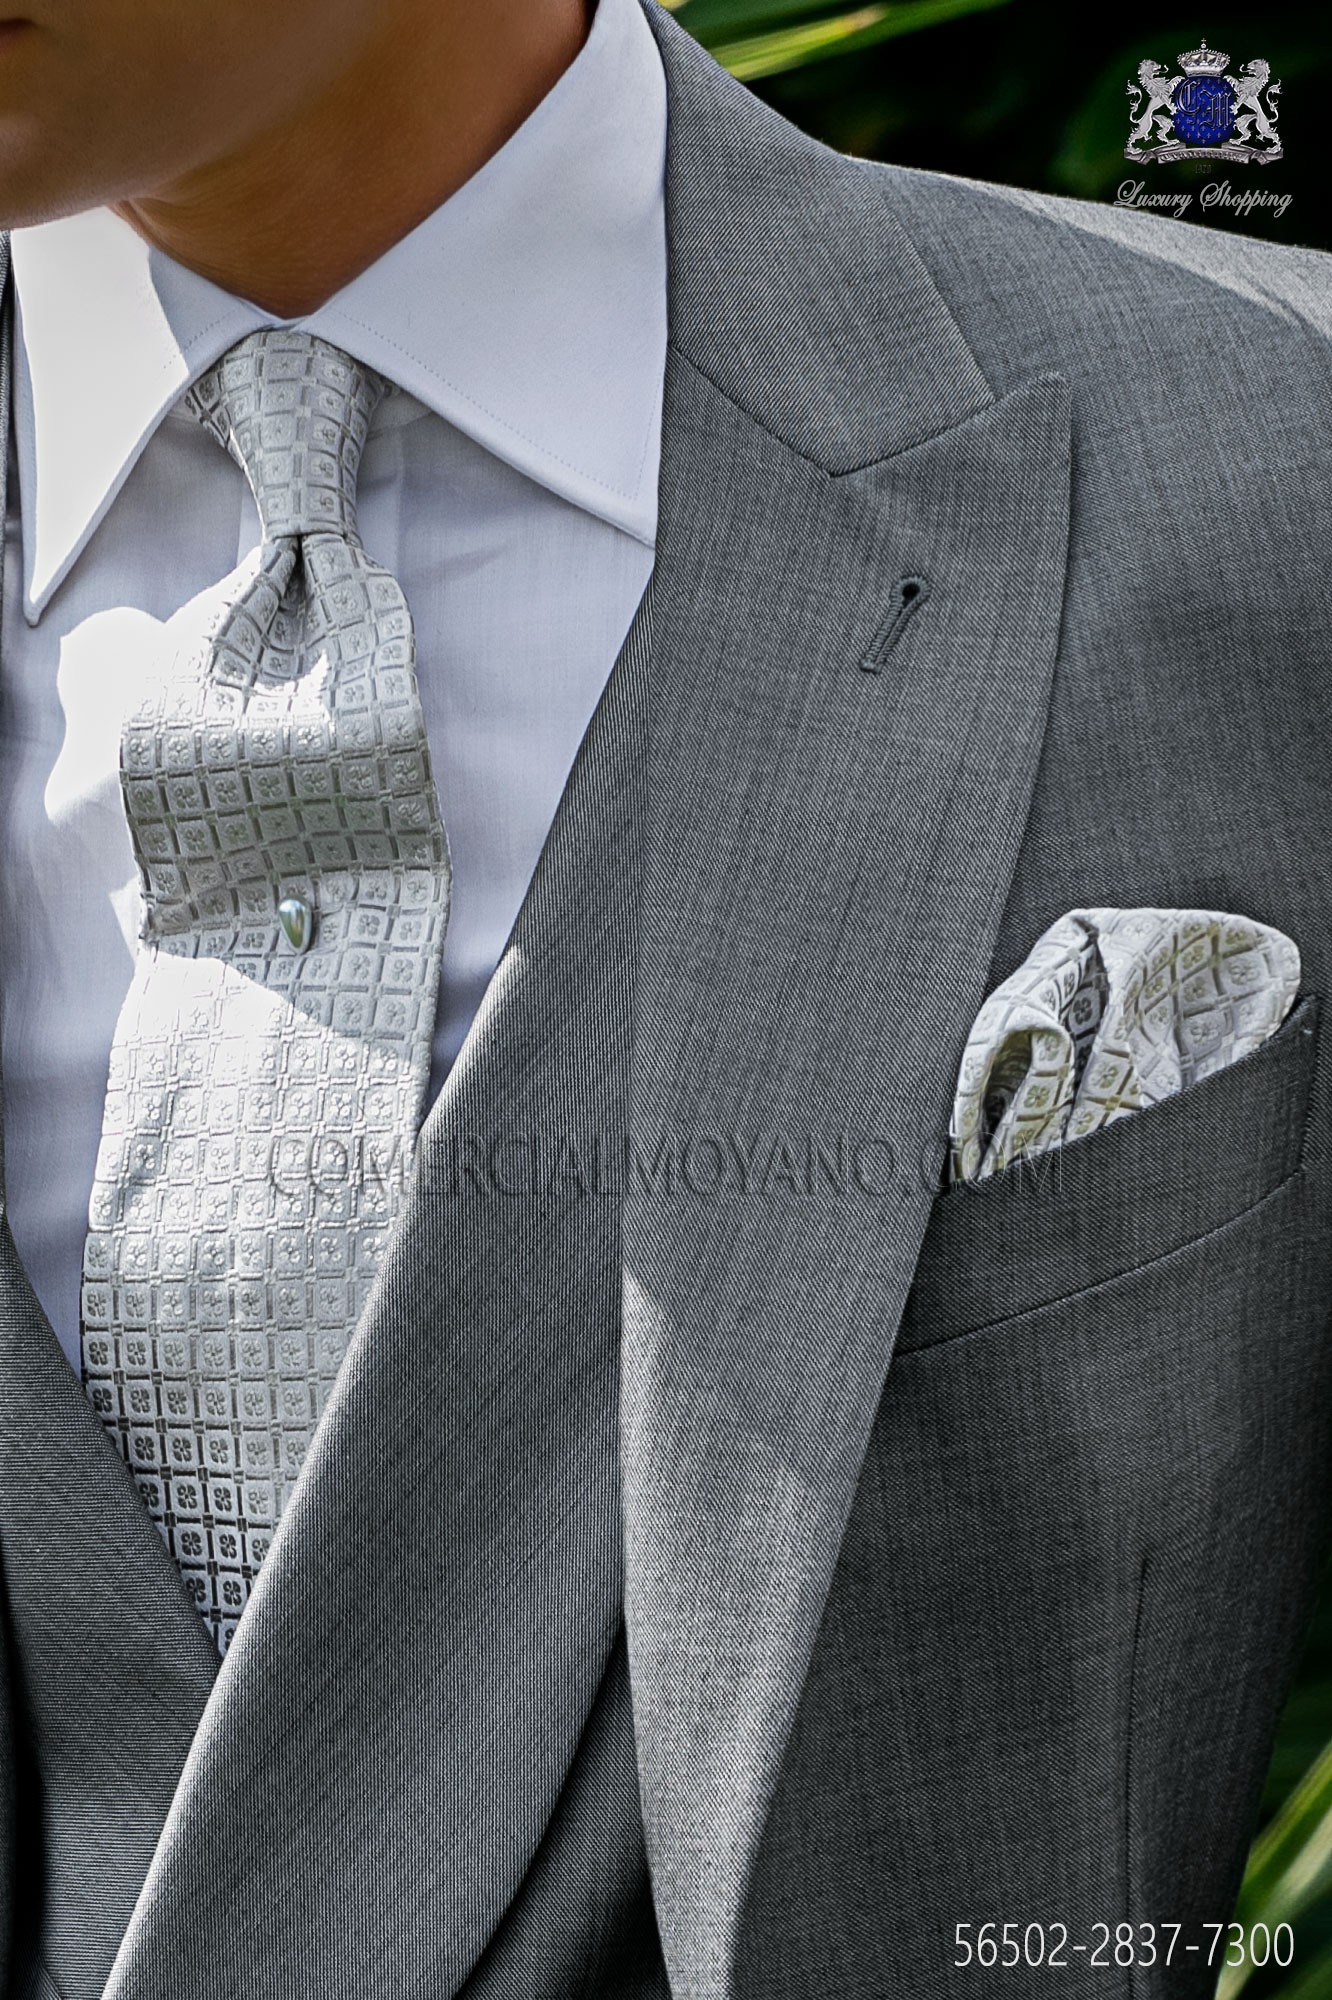 Krawatte und Taschentuch Seide Jacquard grau Mario Moreno Moyano